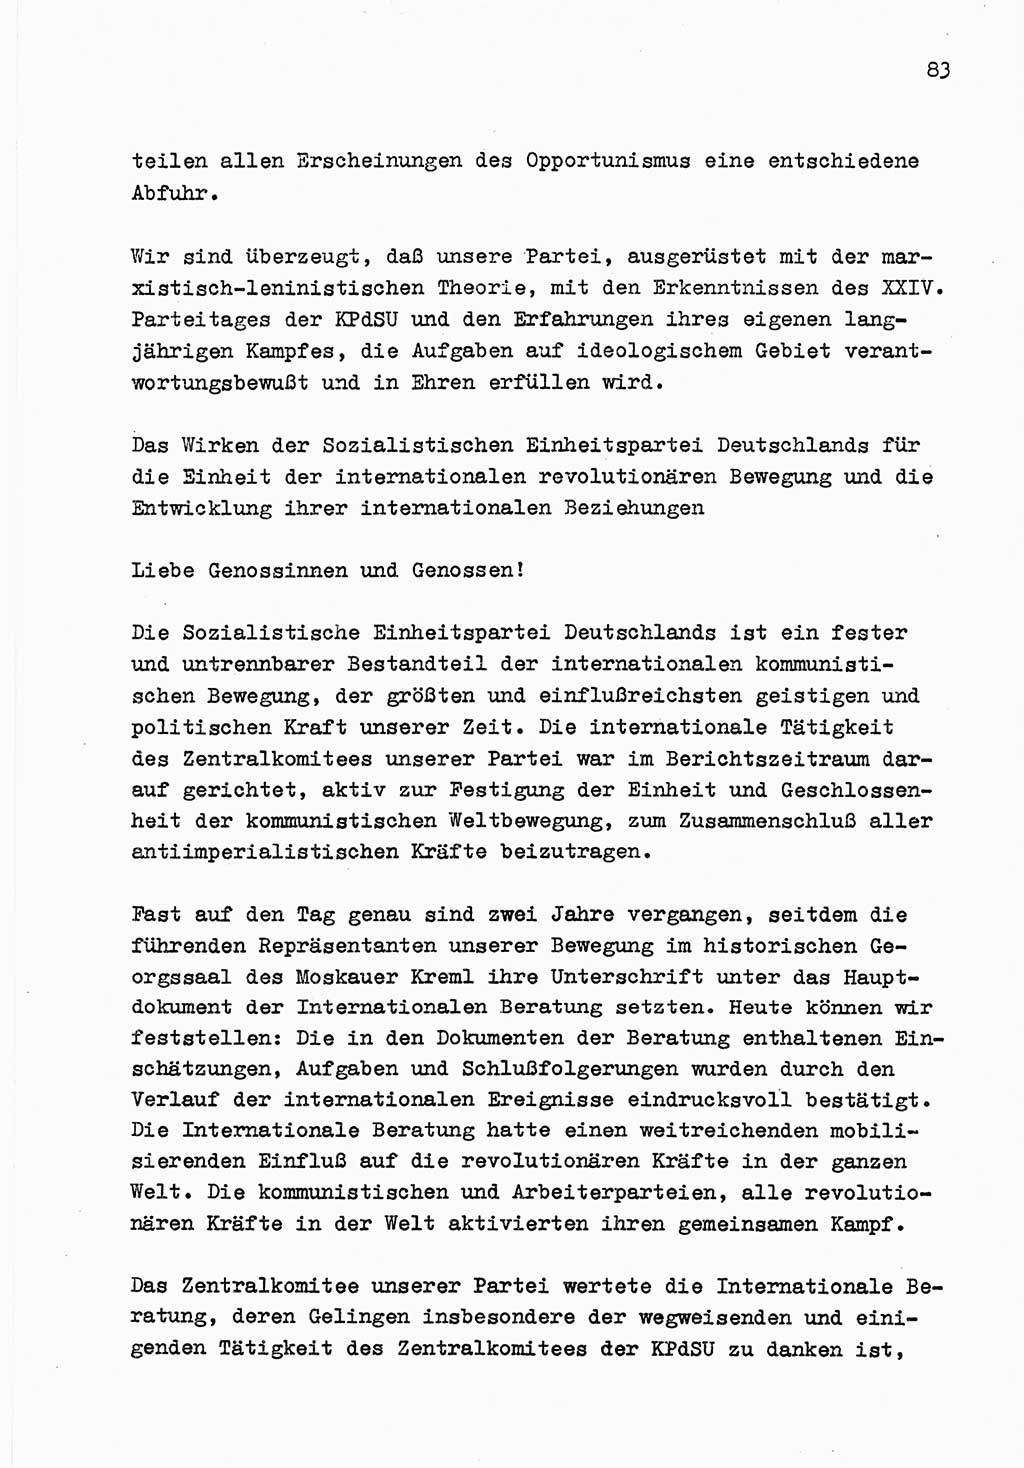 Zu Fragen der Parteiarbeit [Sozialistische Einheitspartei Deutschlands (SED) Deutsche Demokratische Republik (DDR)] 1979, Seite 83 (Fr. PA SED DDR 1979, S. 83)